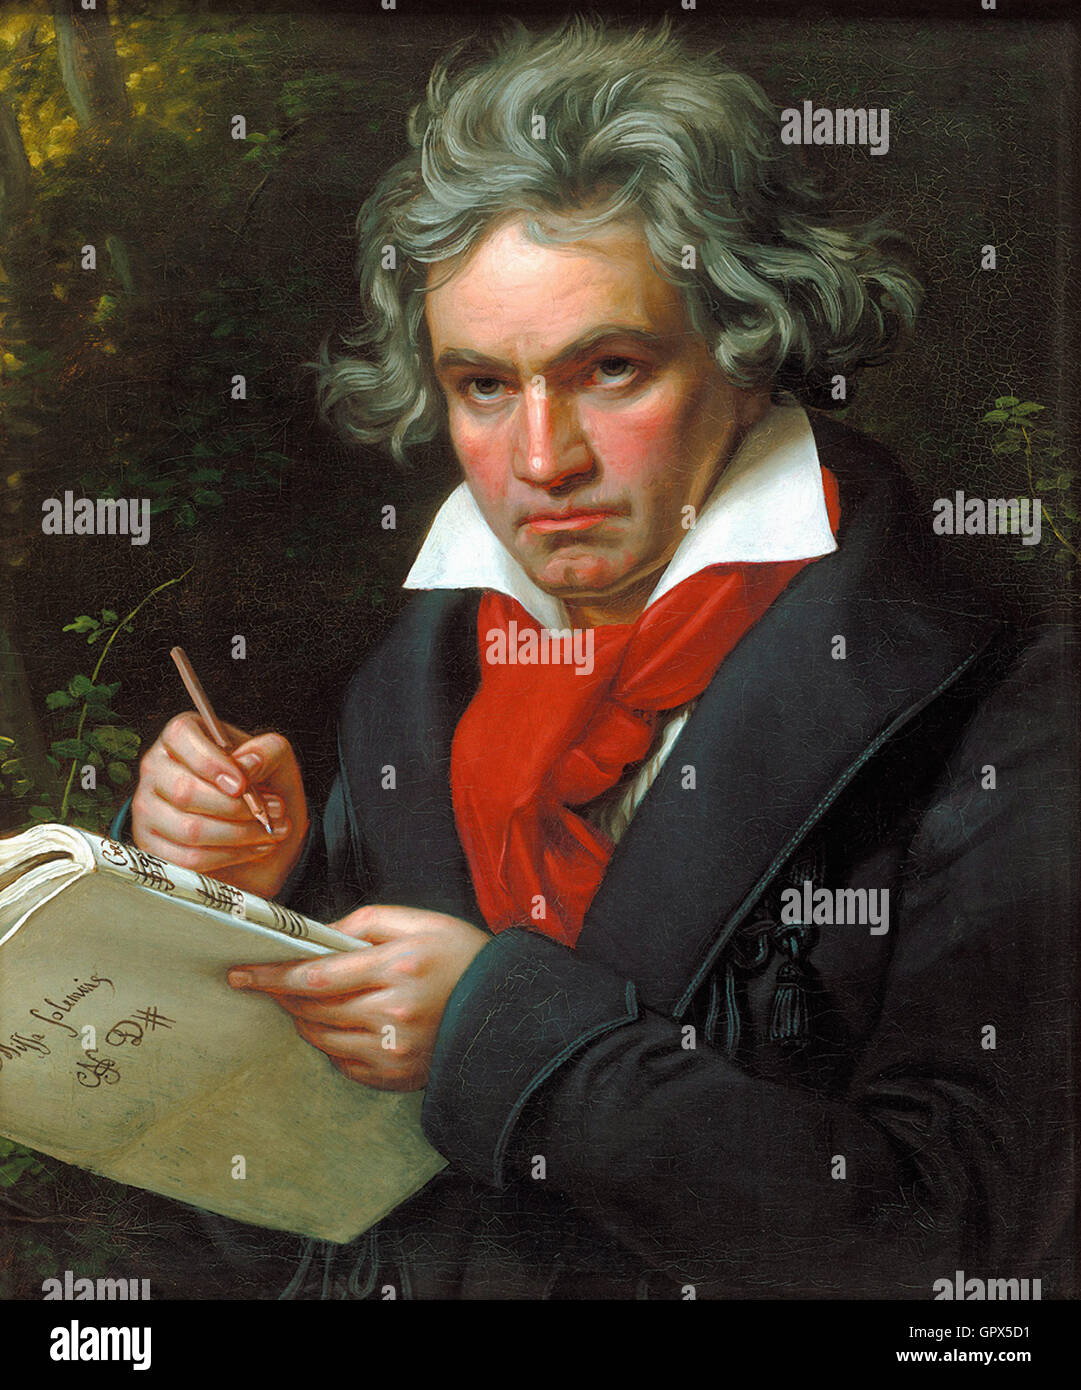 Beethoven portrait Stock Photo